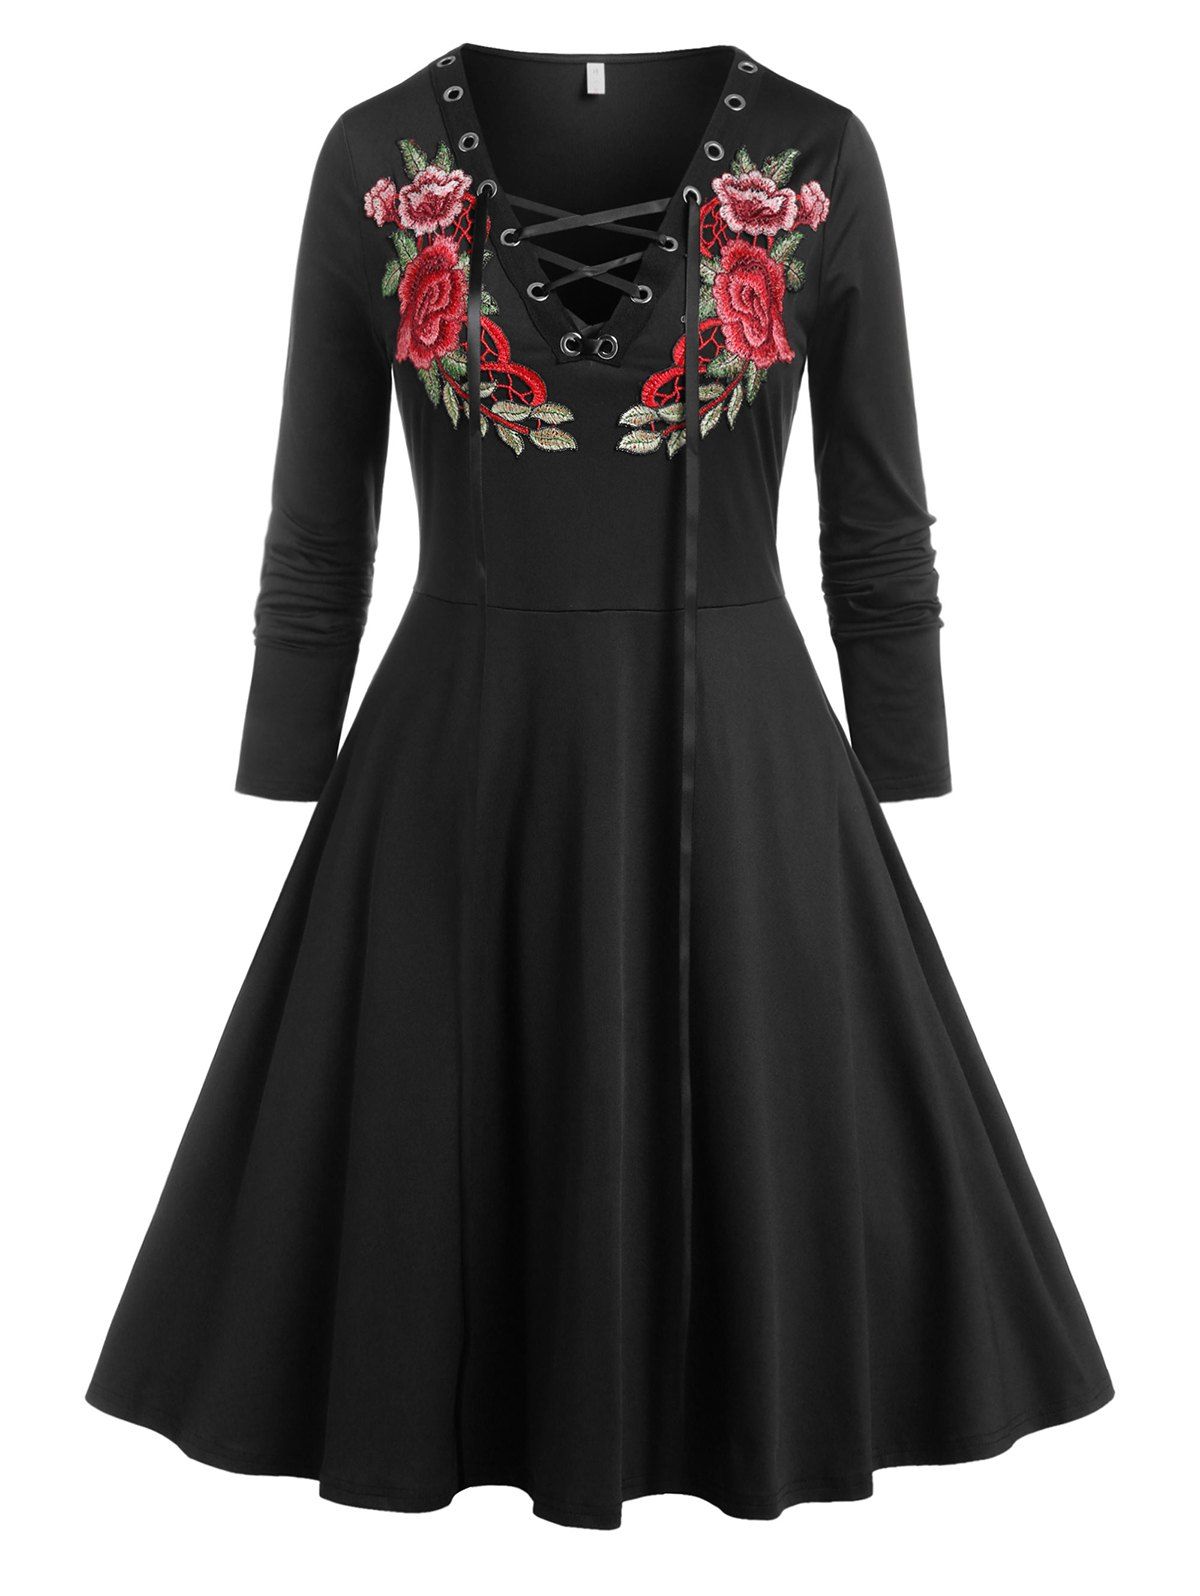 Plus Size Lace Up Floral Applique Dress - BLACK 3X